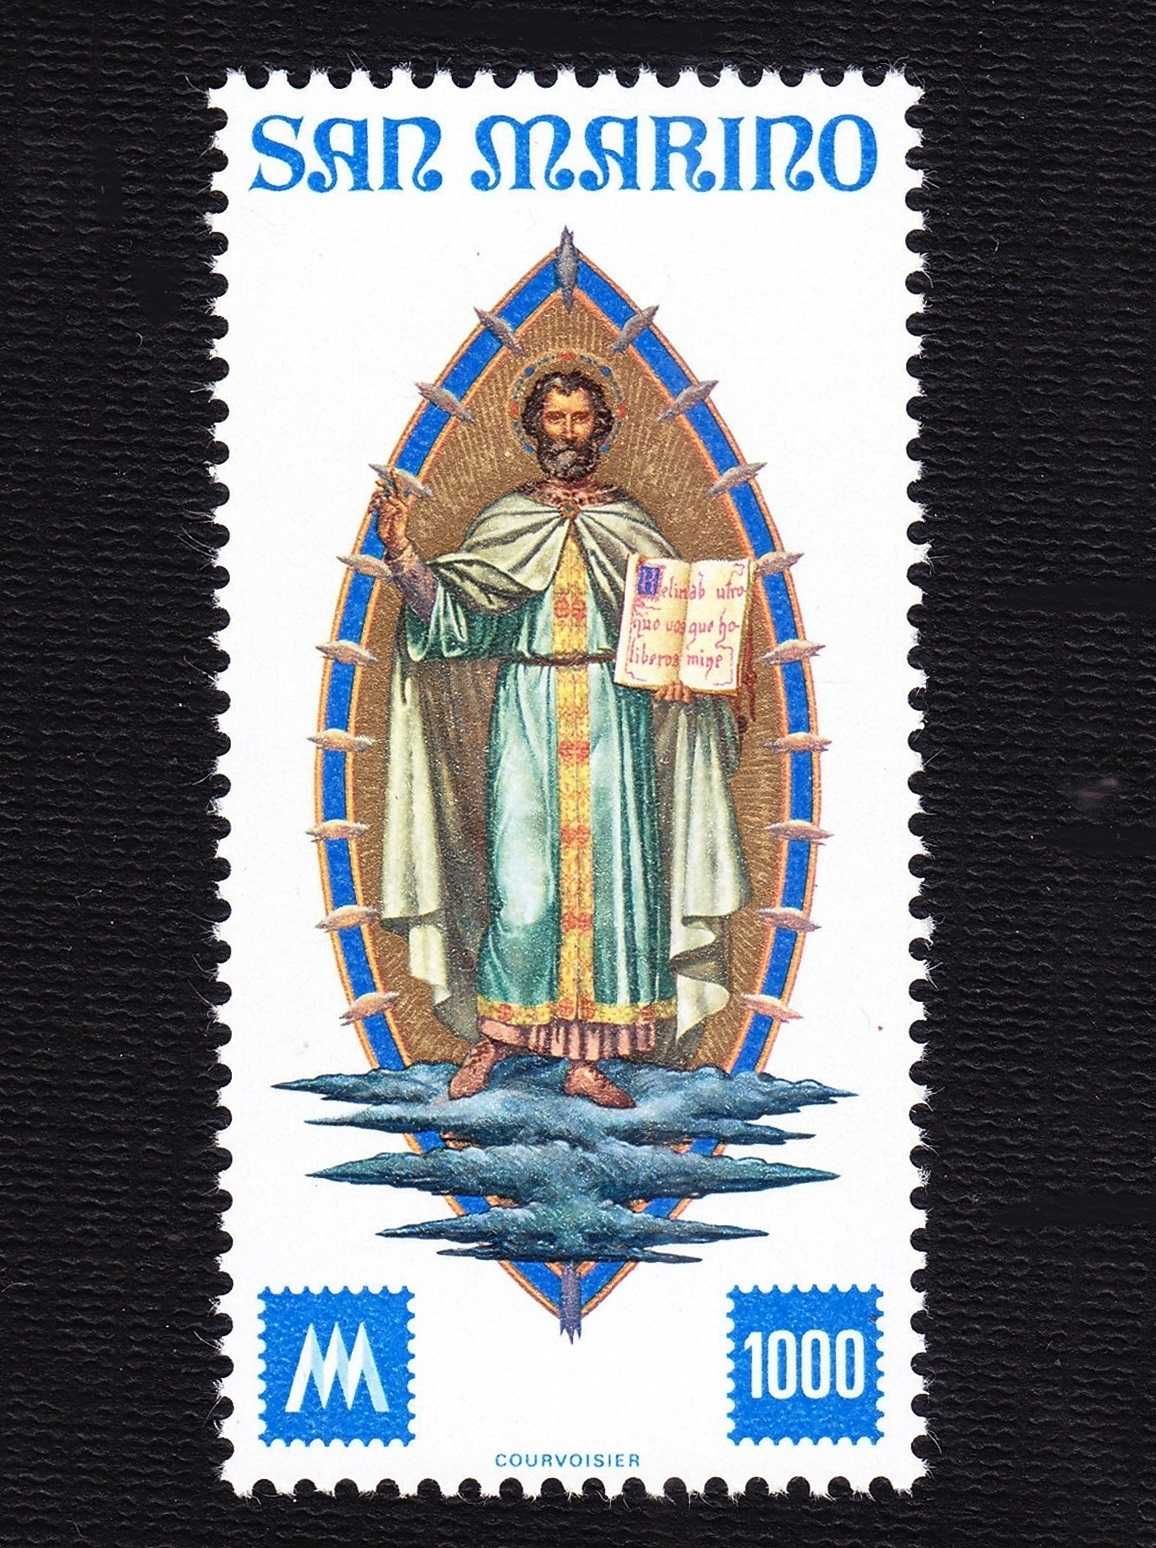 1977 - São Marino - Selos novos (MNH)